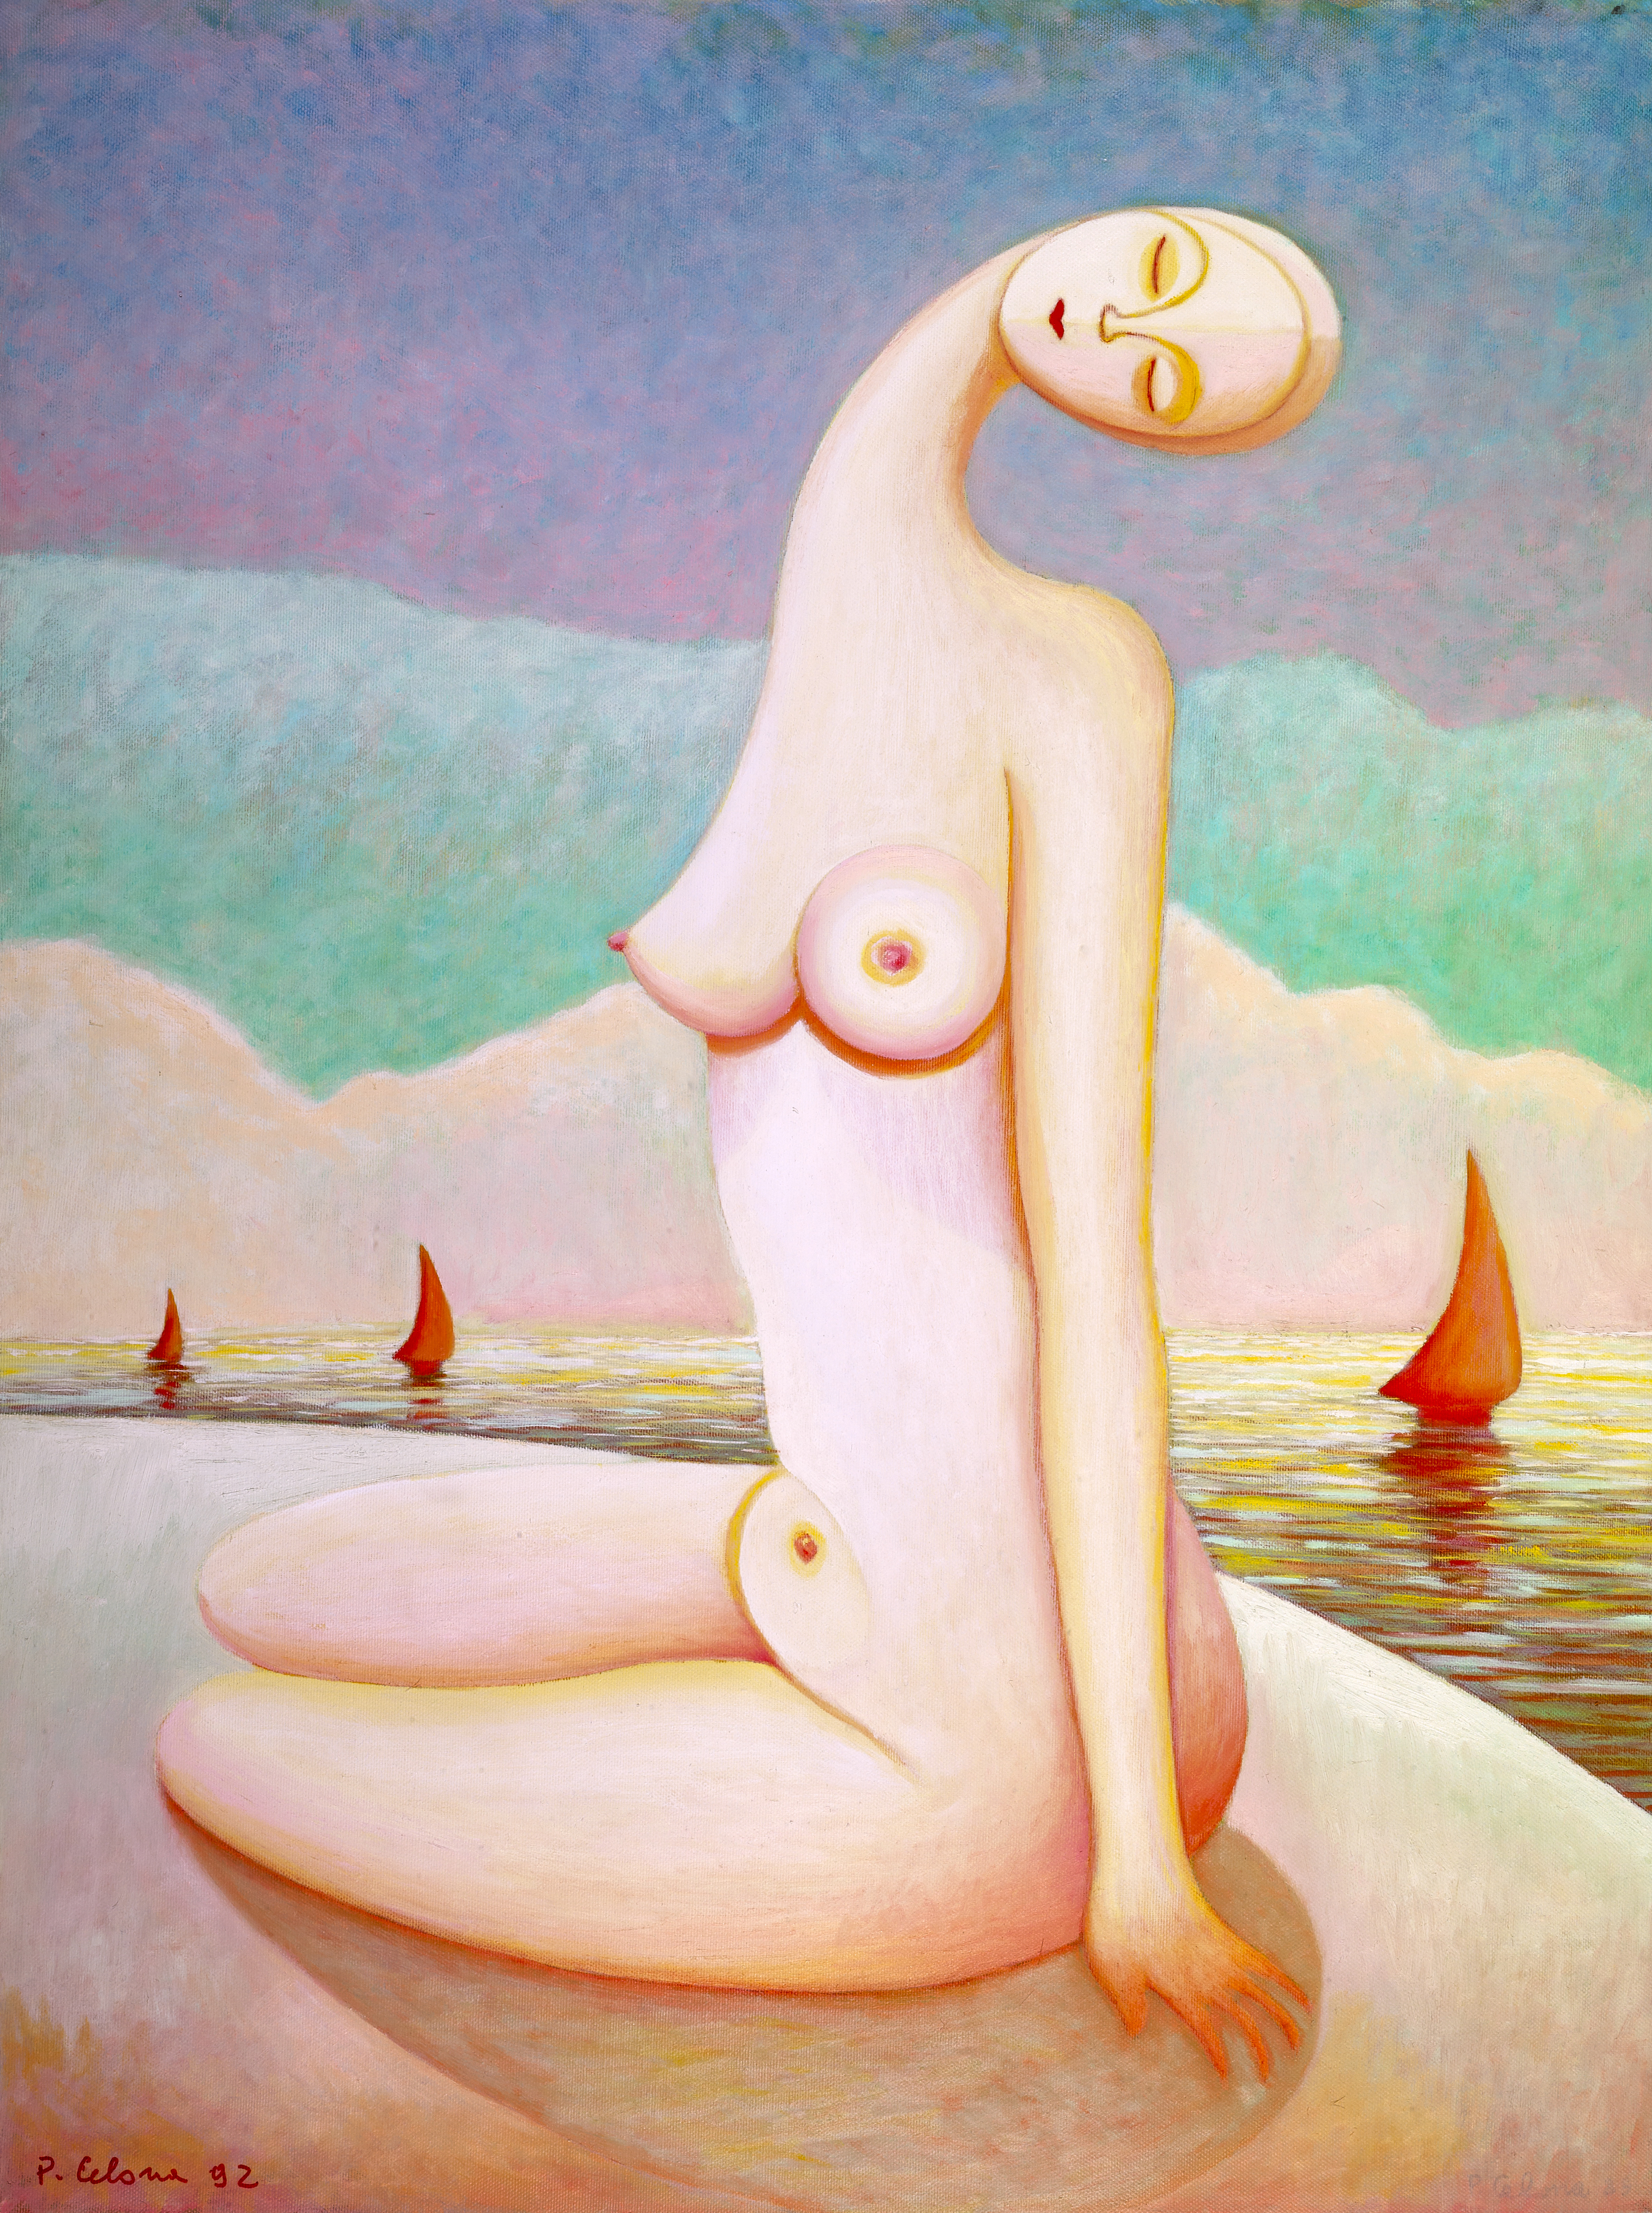 Figura sulla spiaggia, 1992
Olio su tela
80 x 60 cm